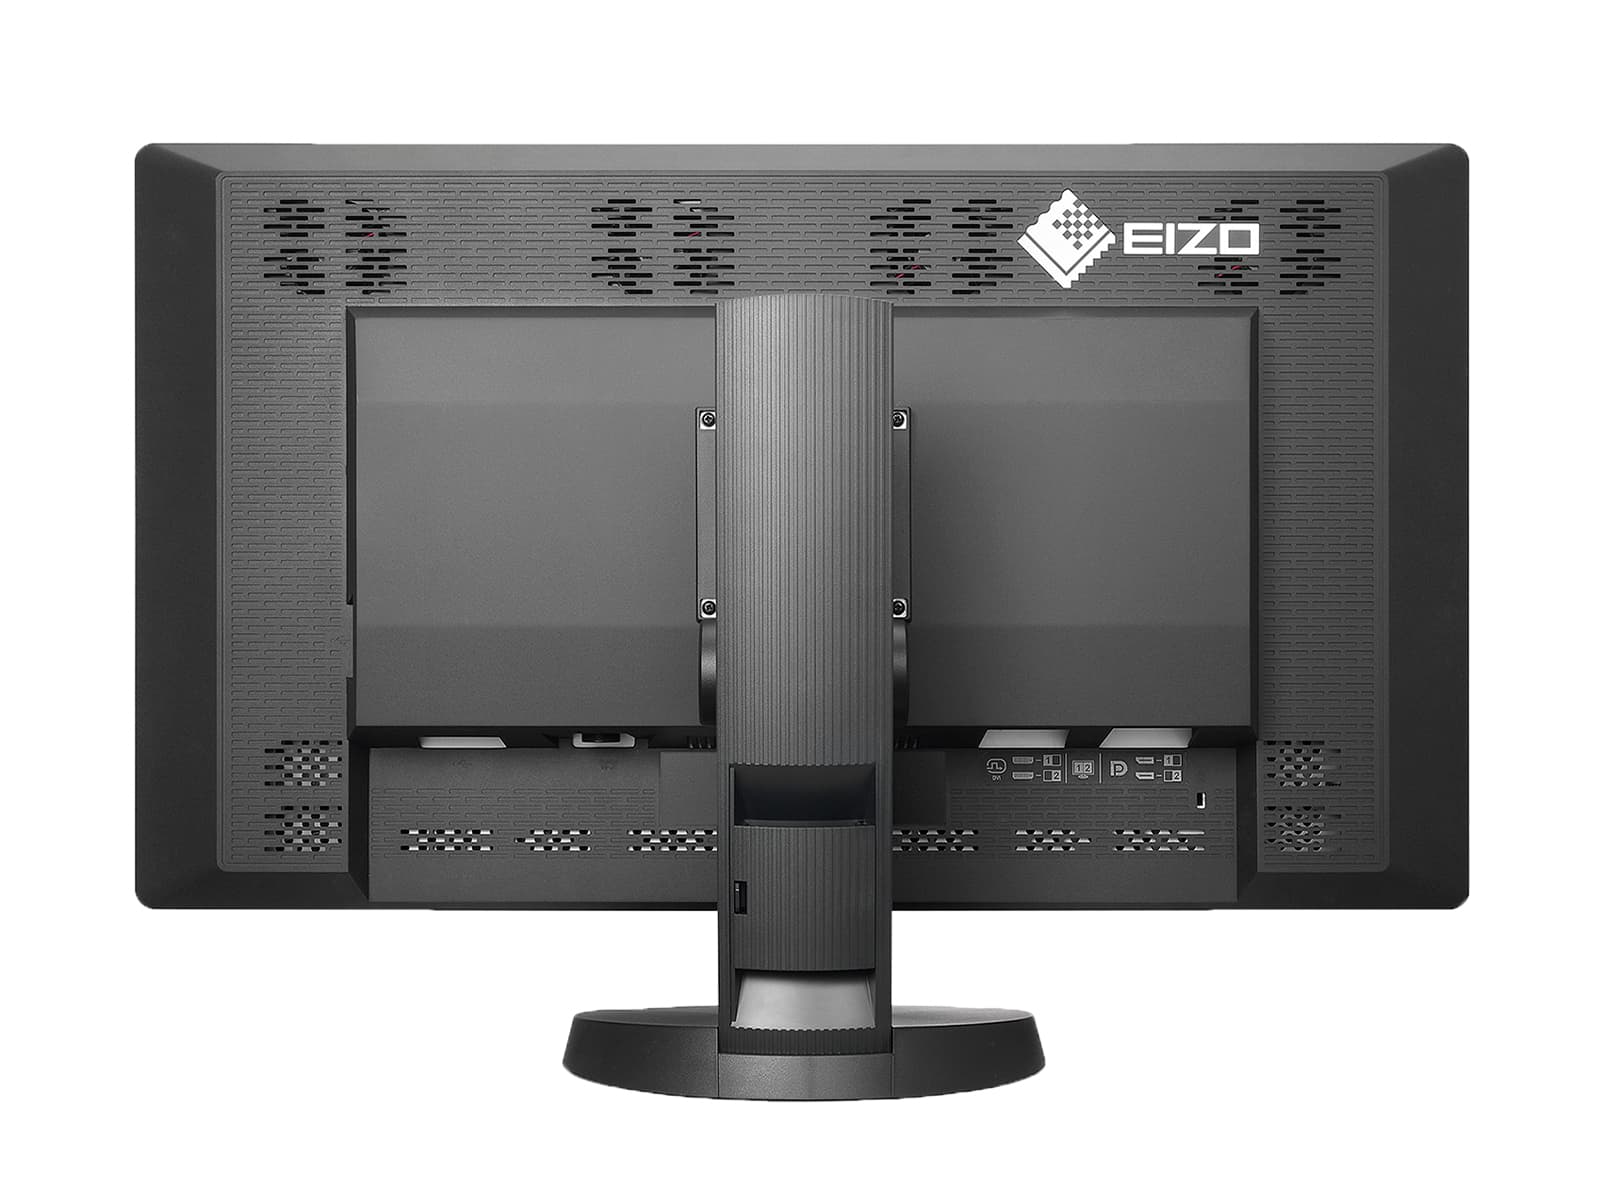 Eizo RadiForce RX850 퓨전 컬러 LED Mammo 3D-DBT 유방 이미징 디스플레이(RX850-BK) Monitors.com